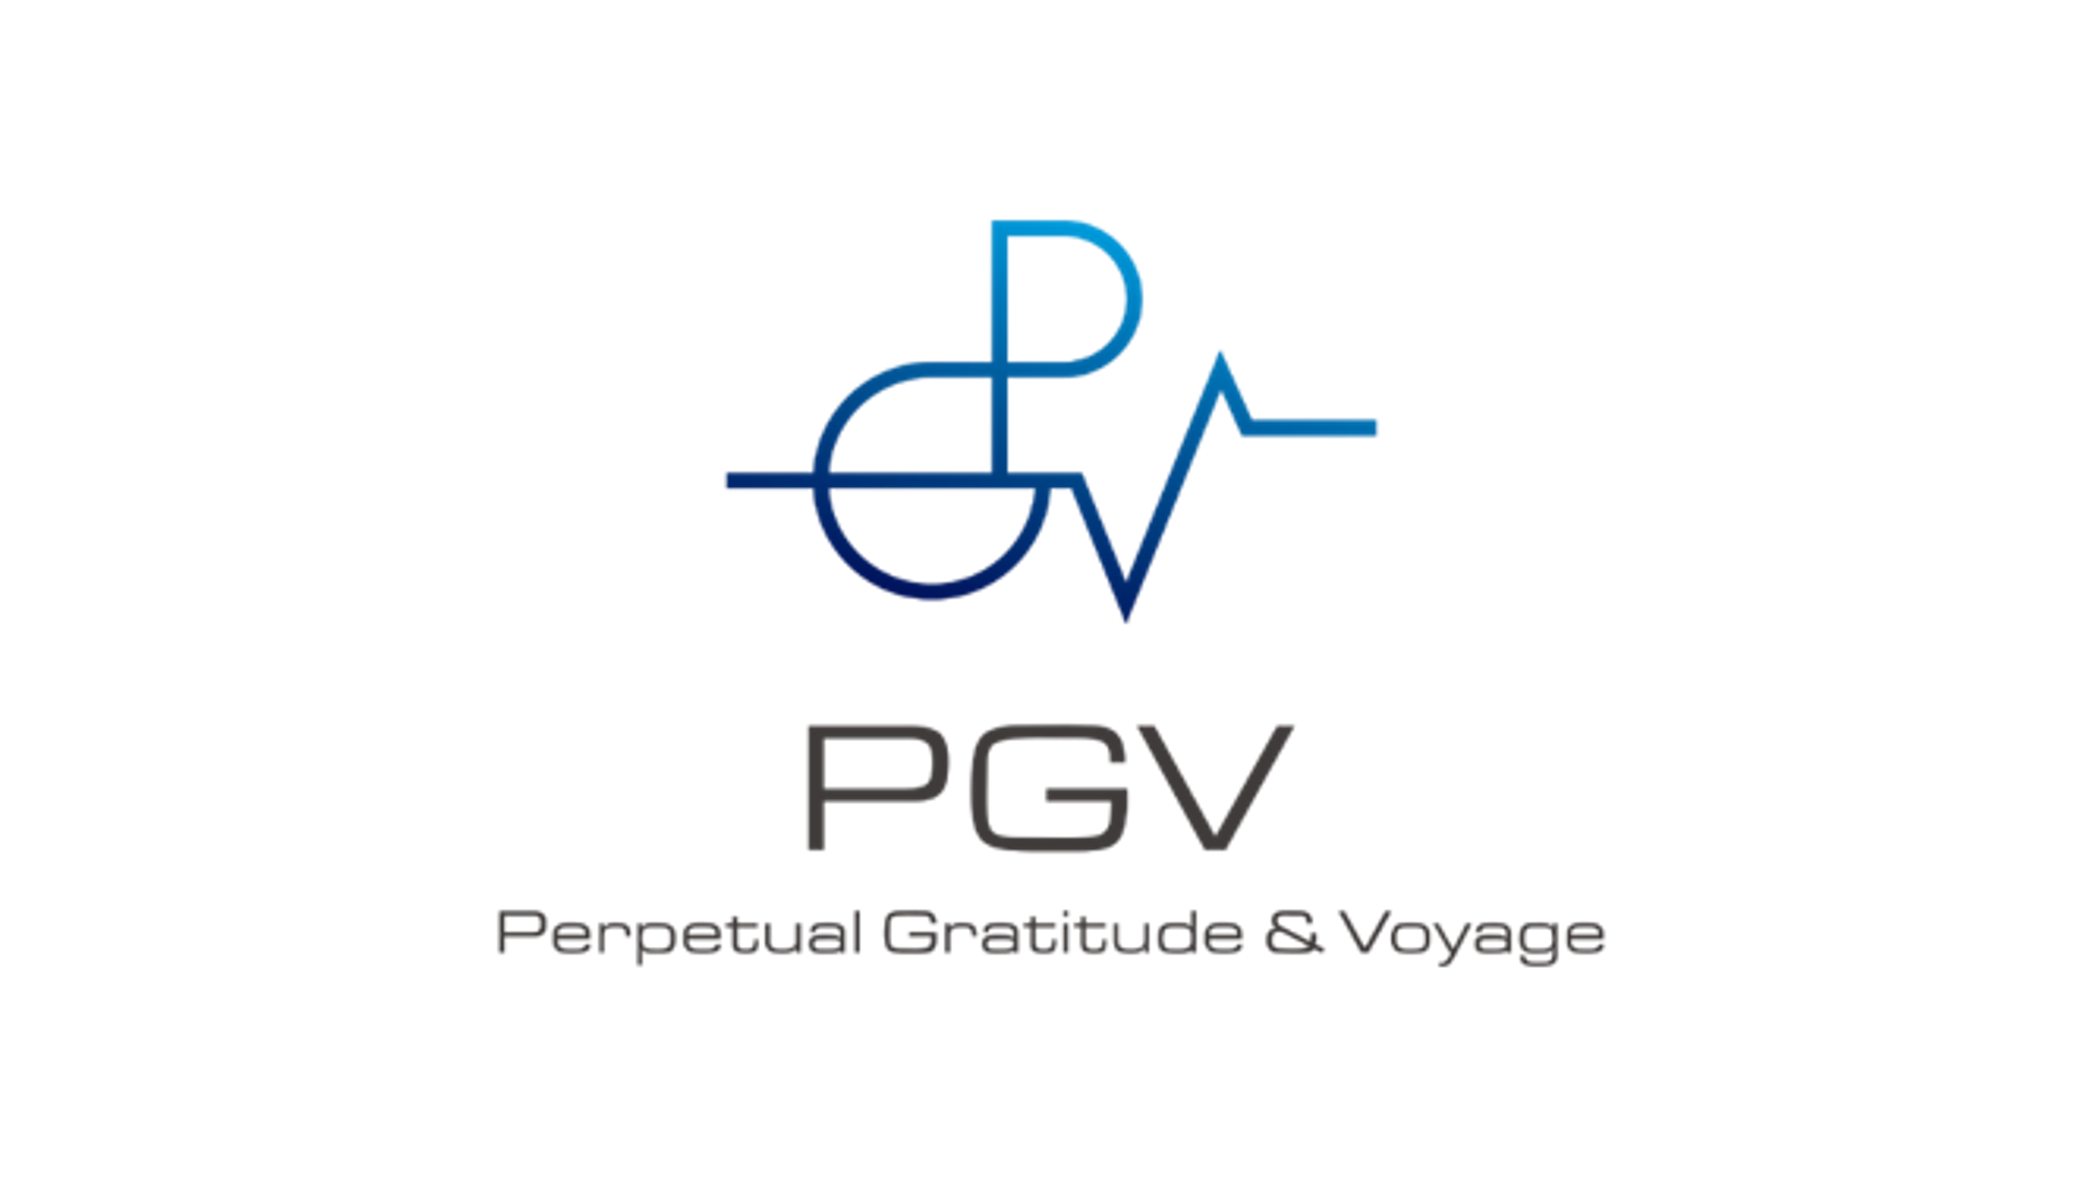 「PGV株式会社」への追加投資を実行しました